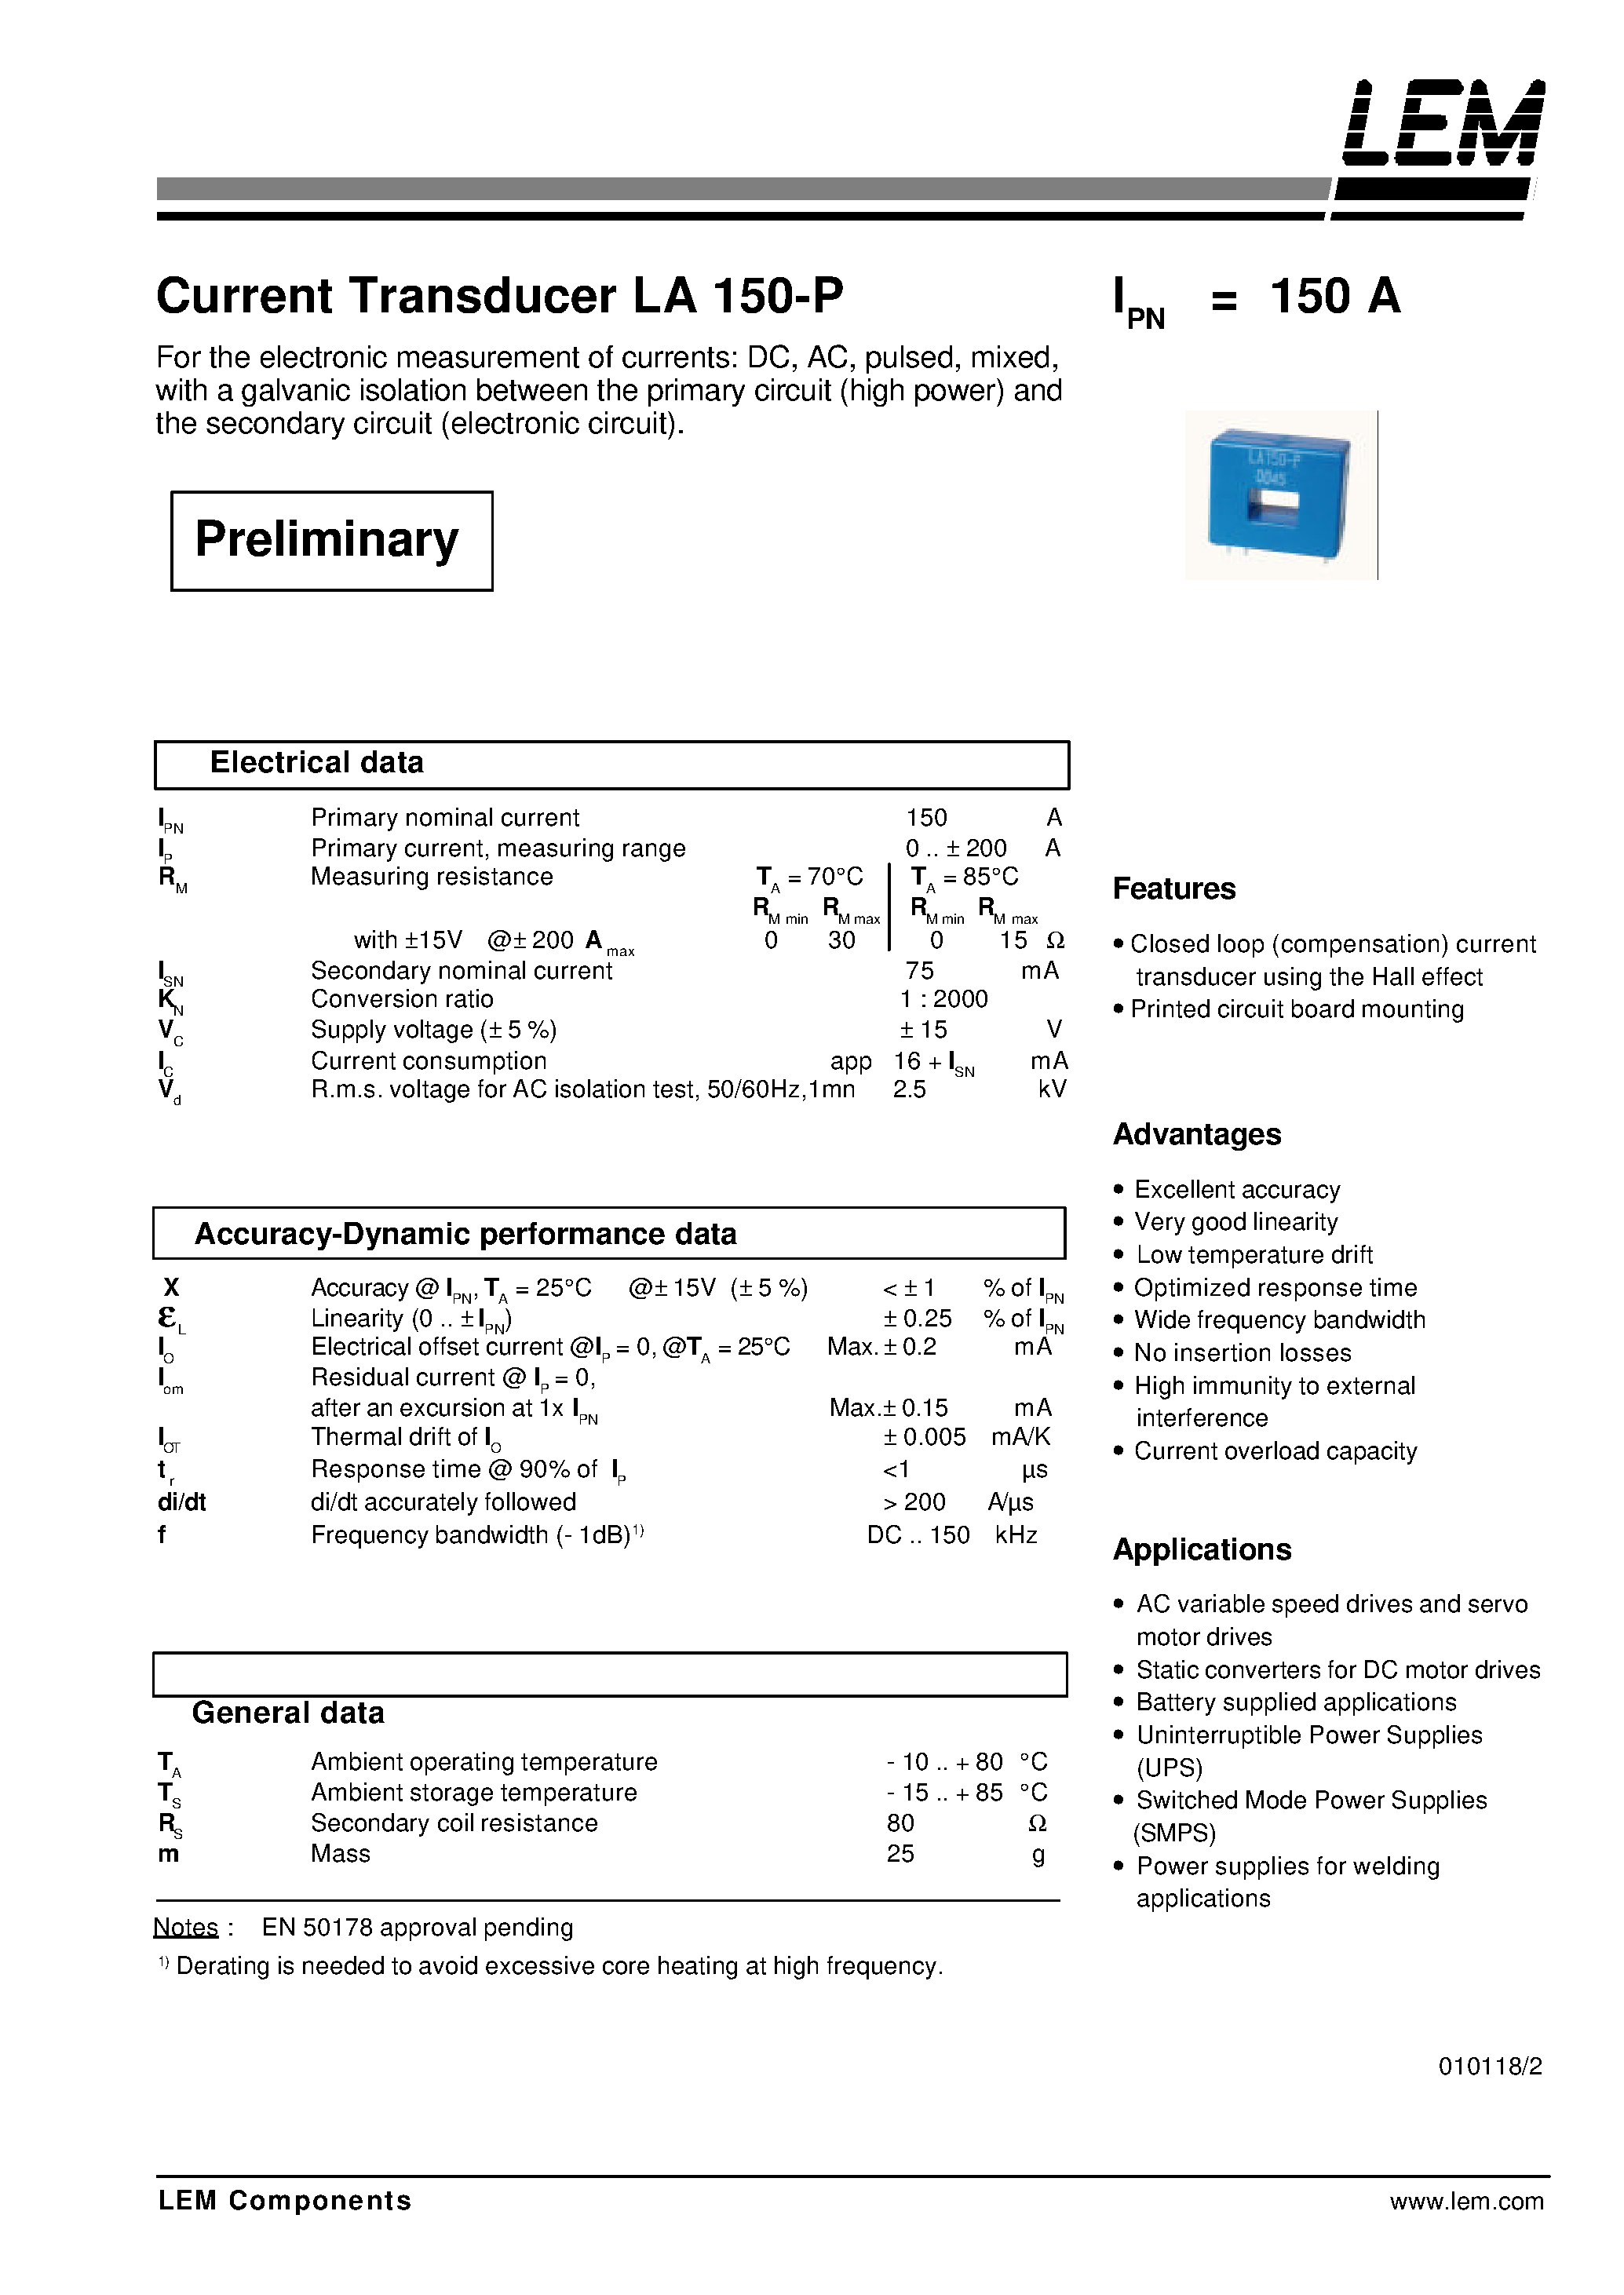 Datasheet LA150-P - Current Transducer LA 150-P page 1